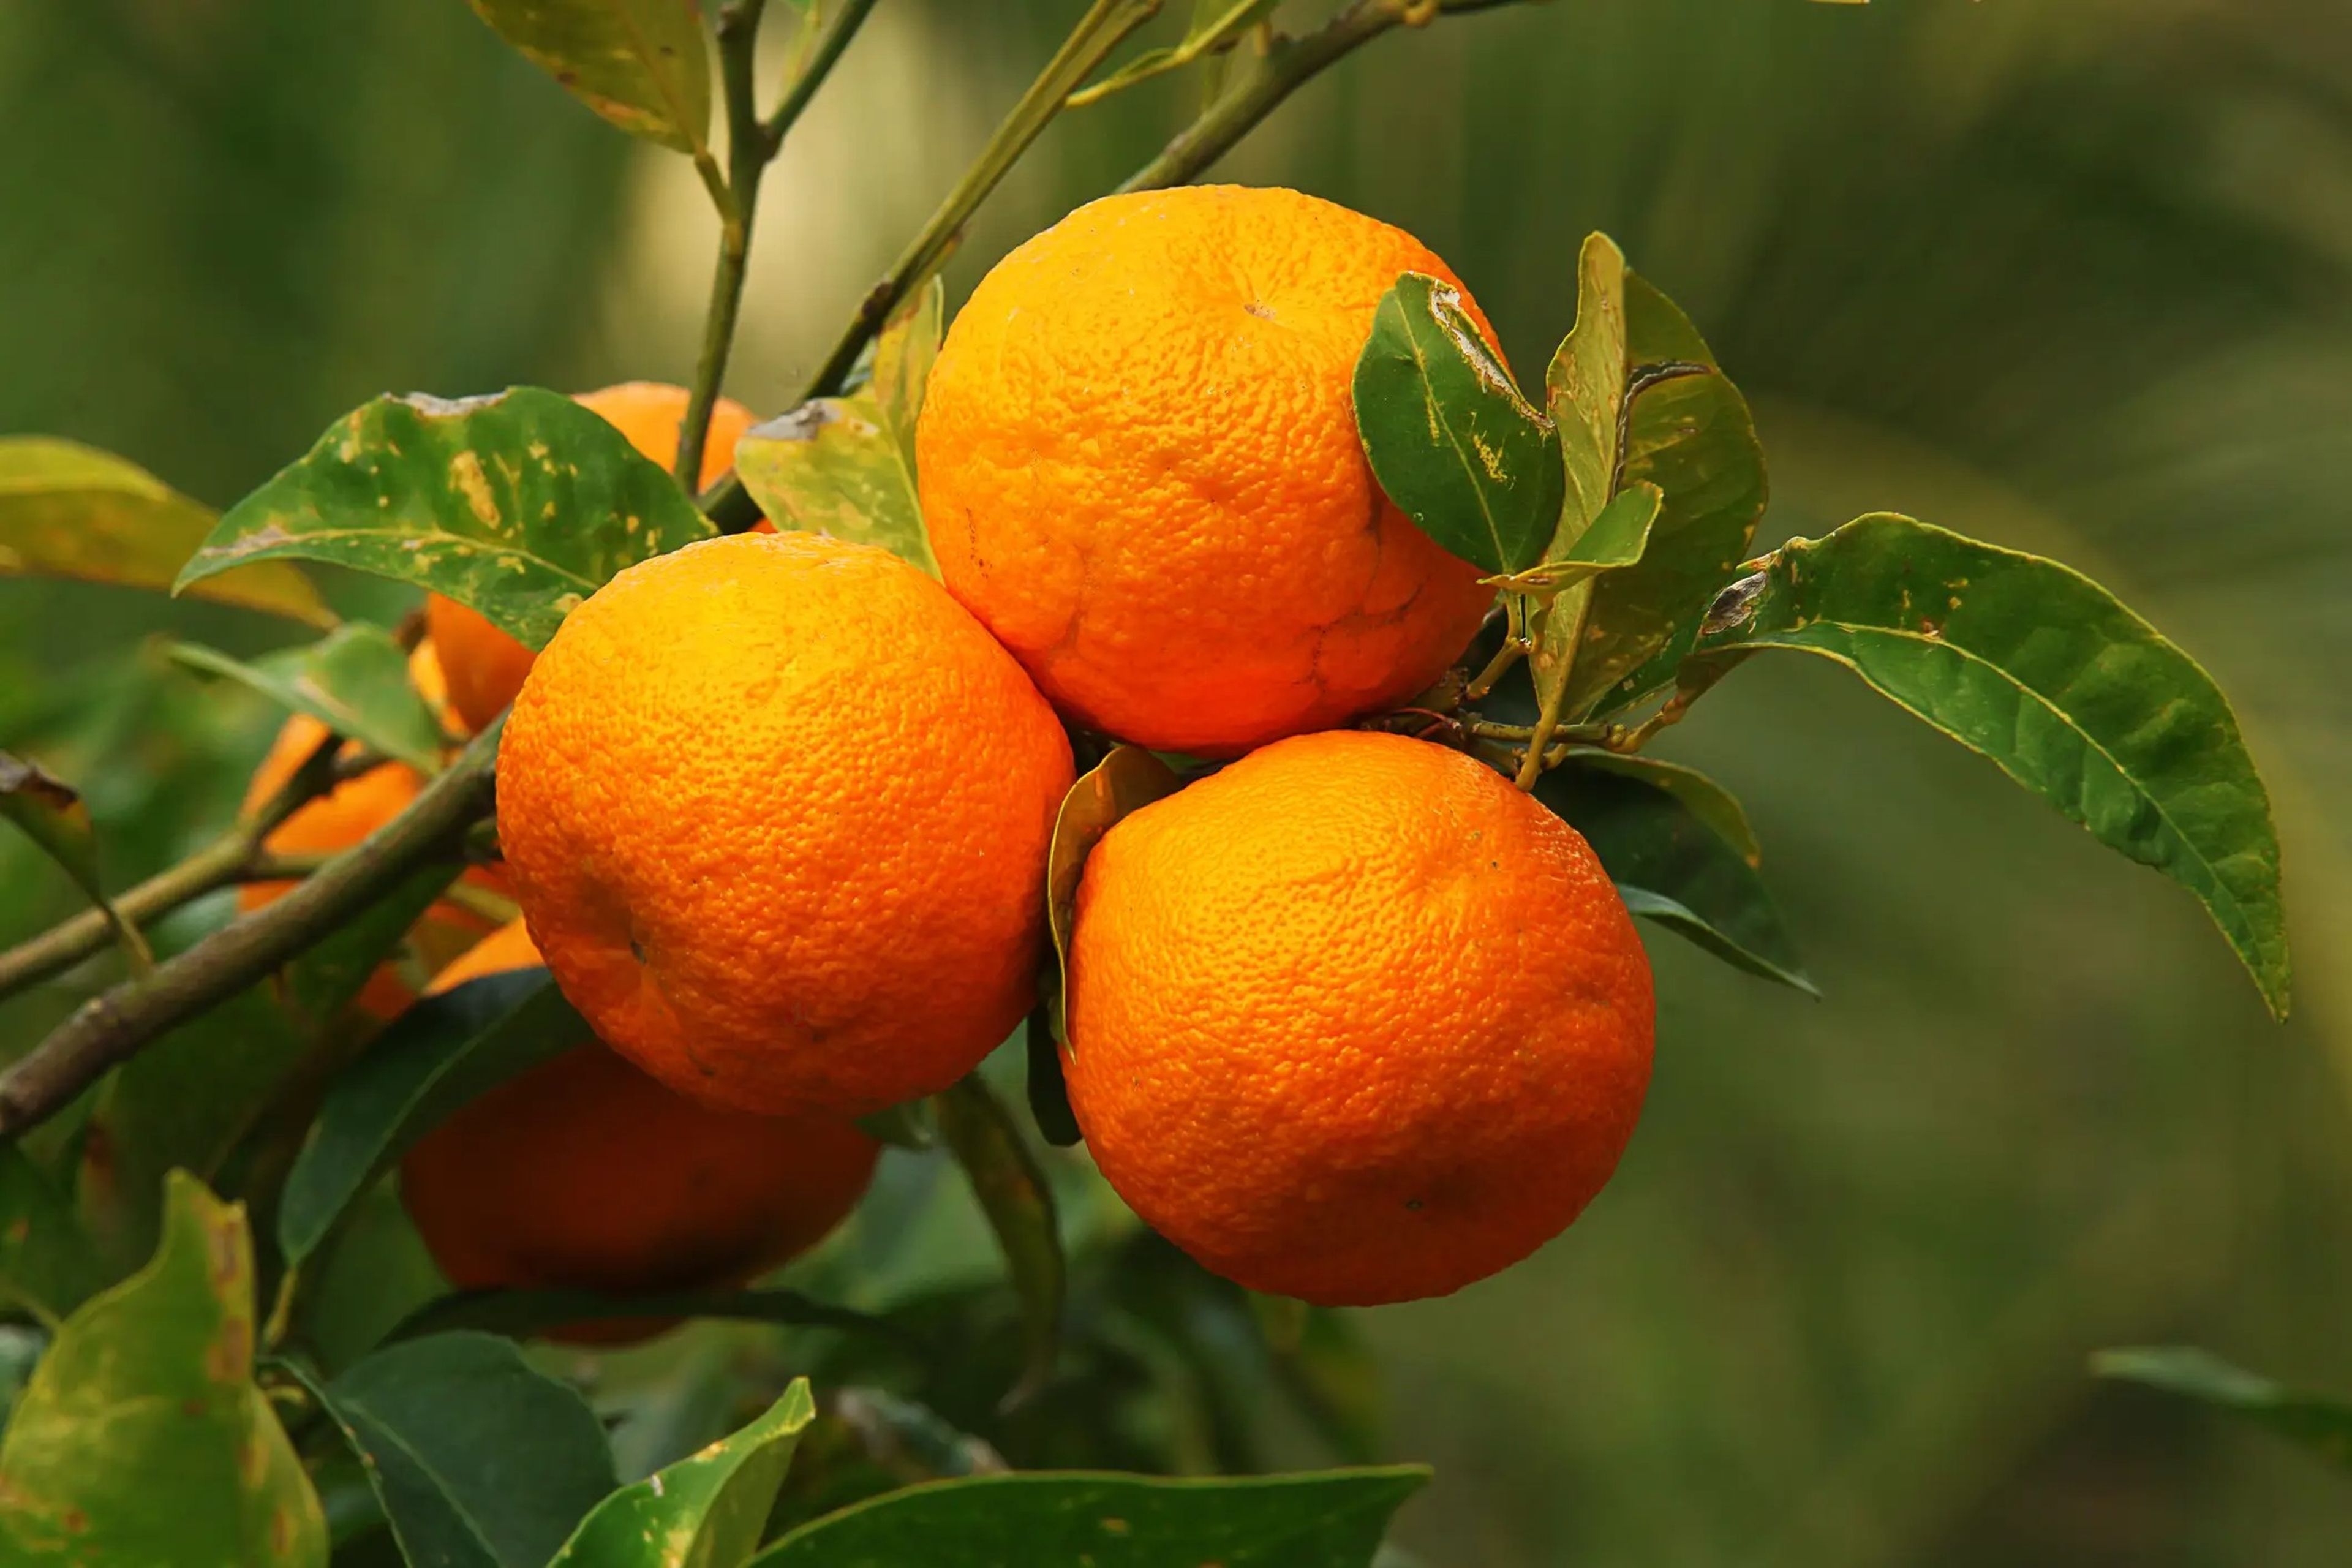 La naranja amarga se ha relacionado con la arritmia cardiaca y puede elevar la presión arterial y la frecuencia cardiaca.